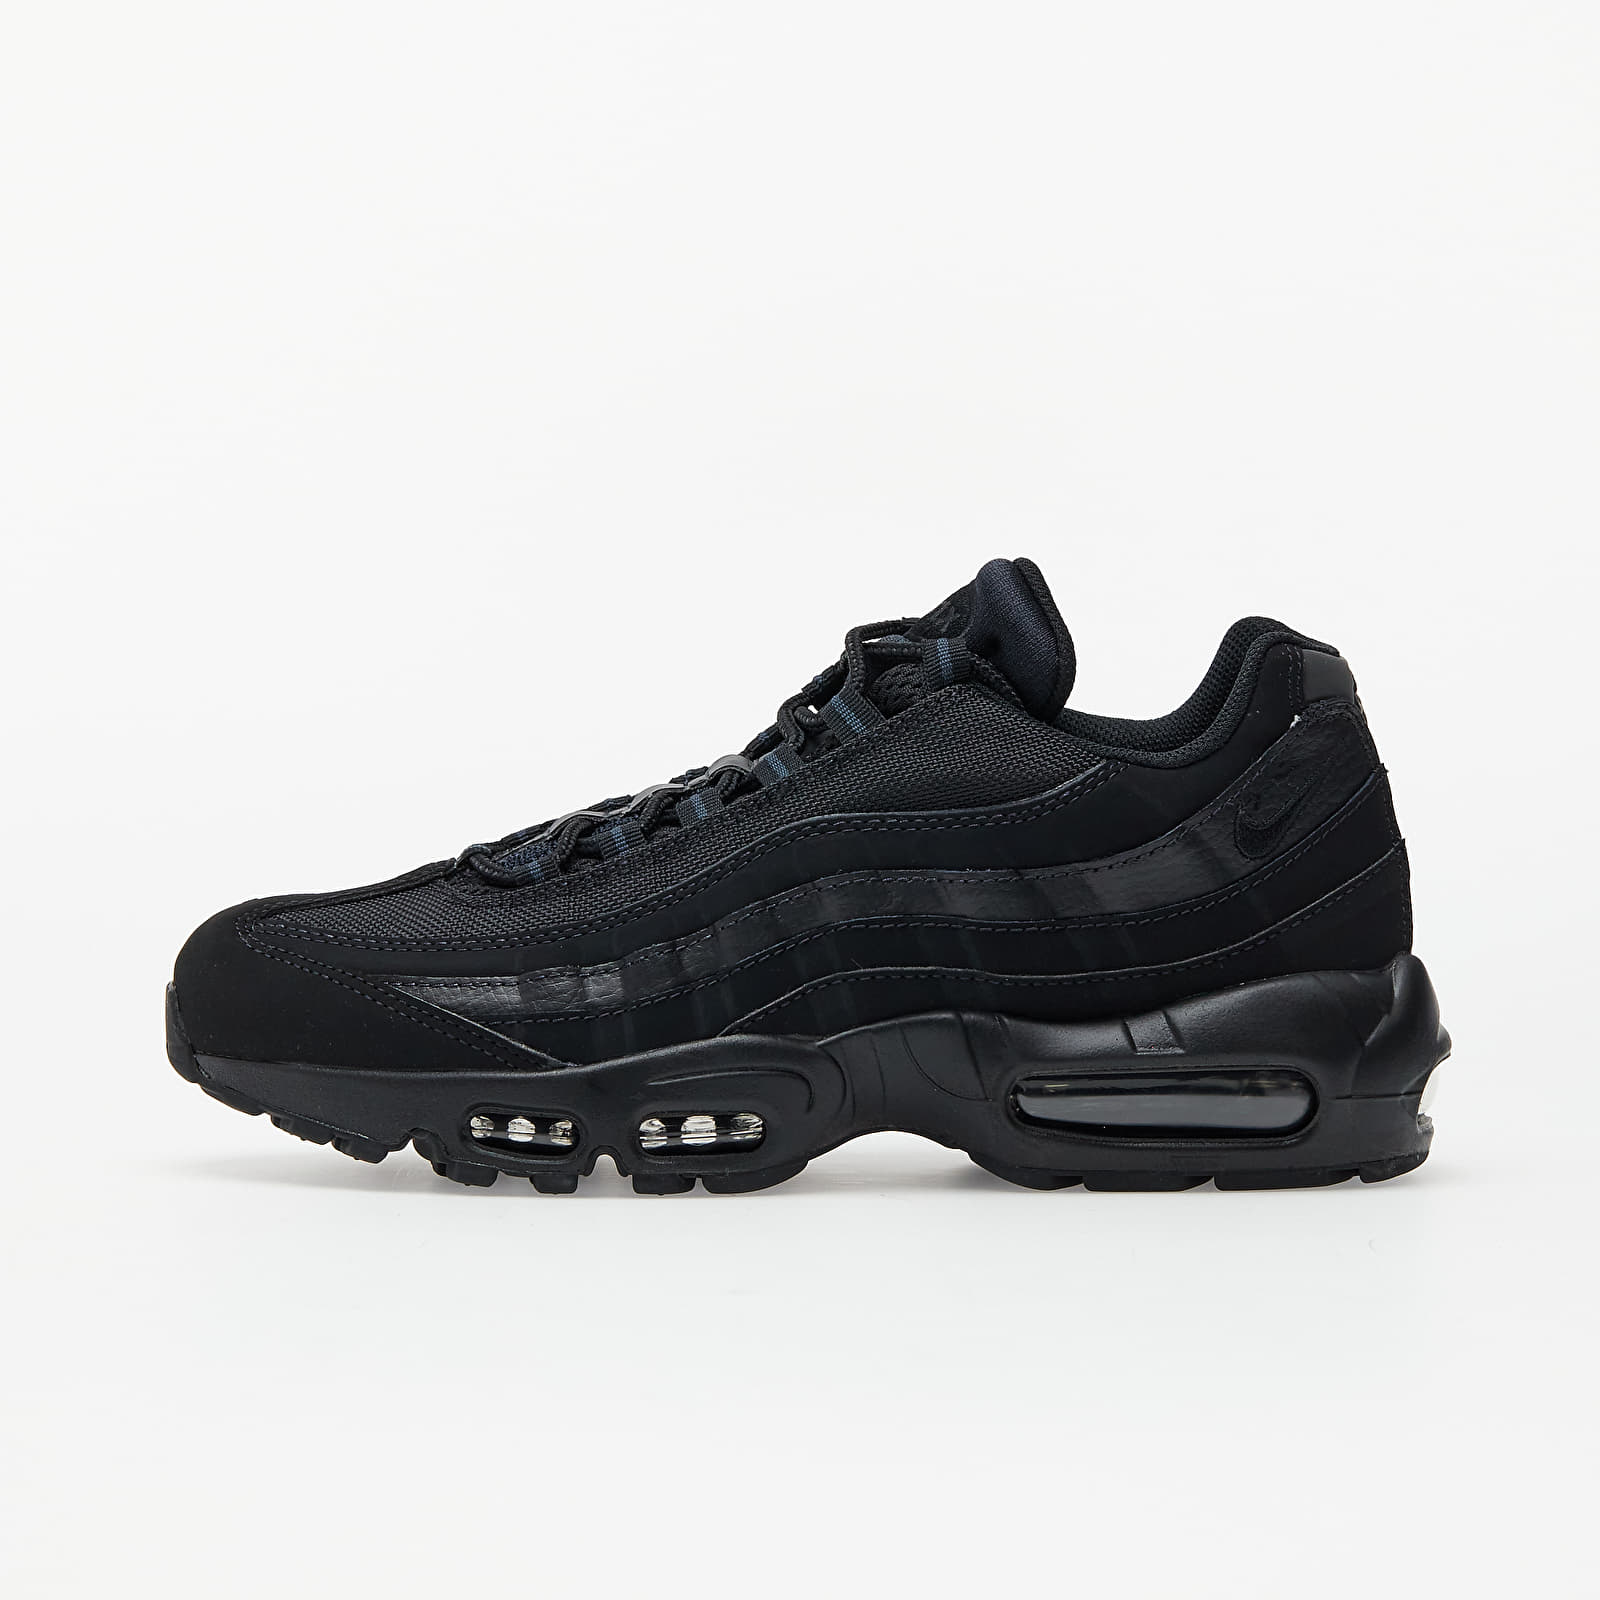 Herren Sneaker und Schuhe Nike Air Max 95 Black/ Black-Anthracite